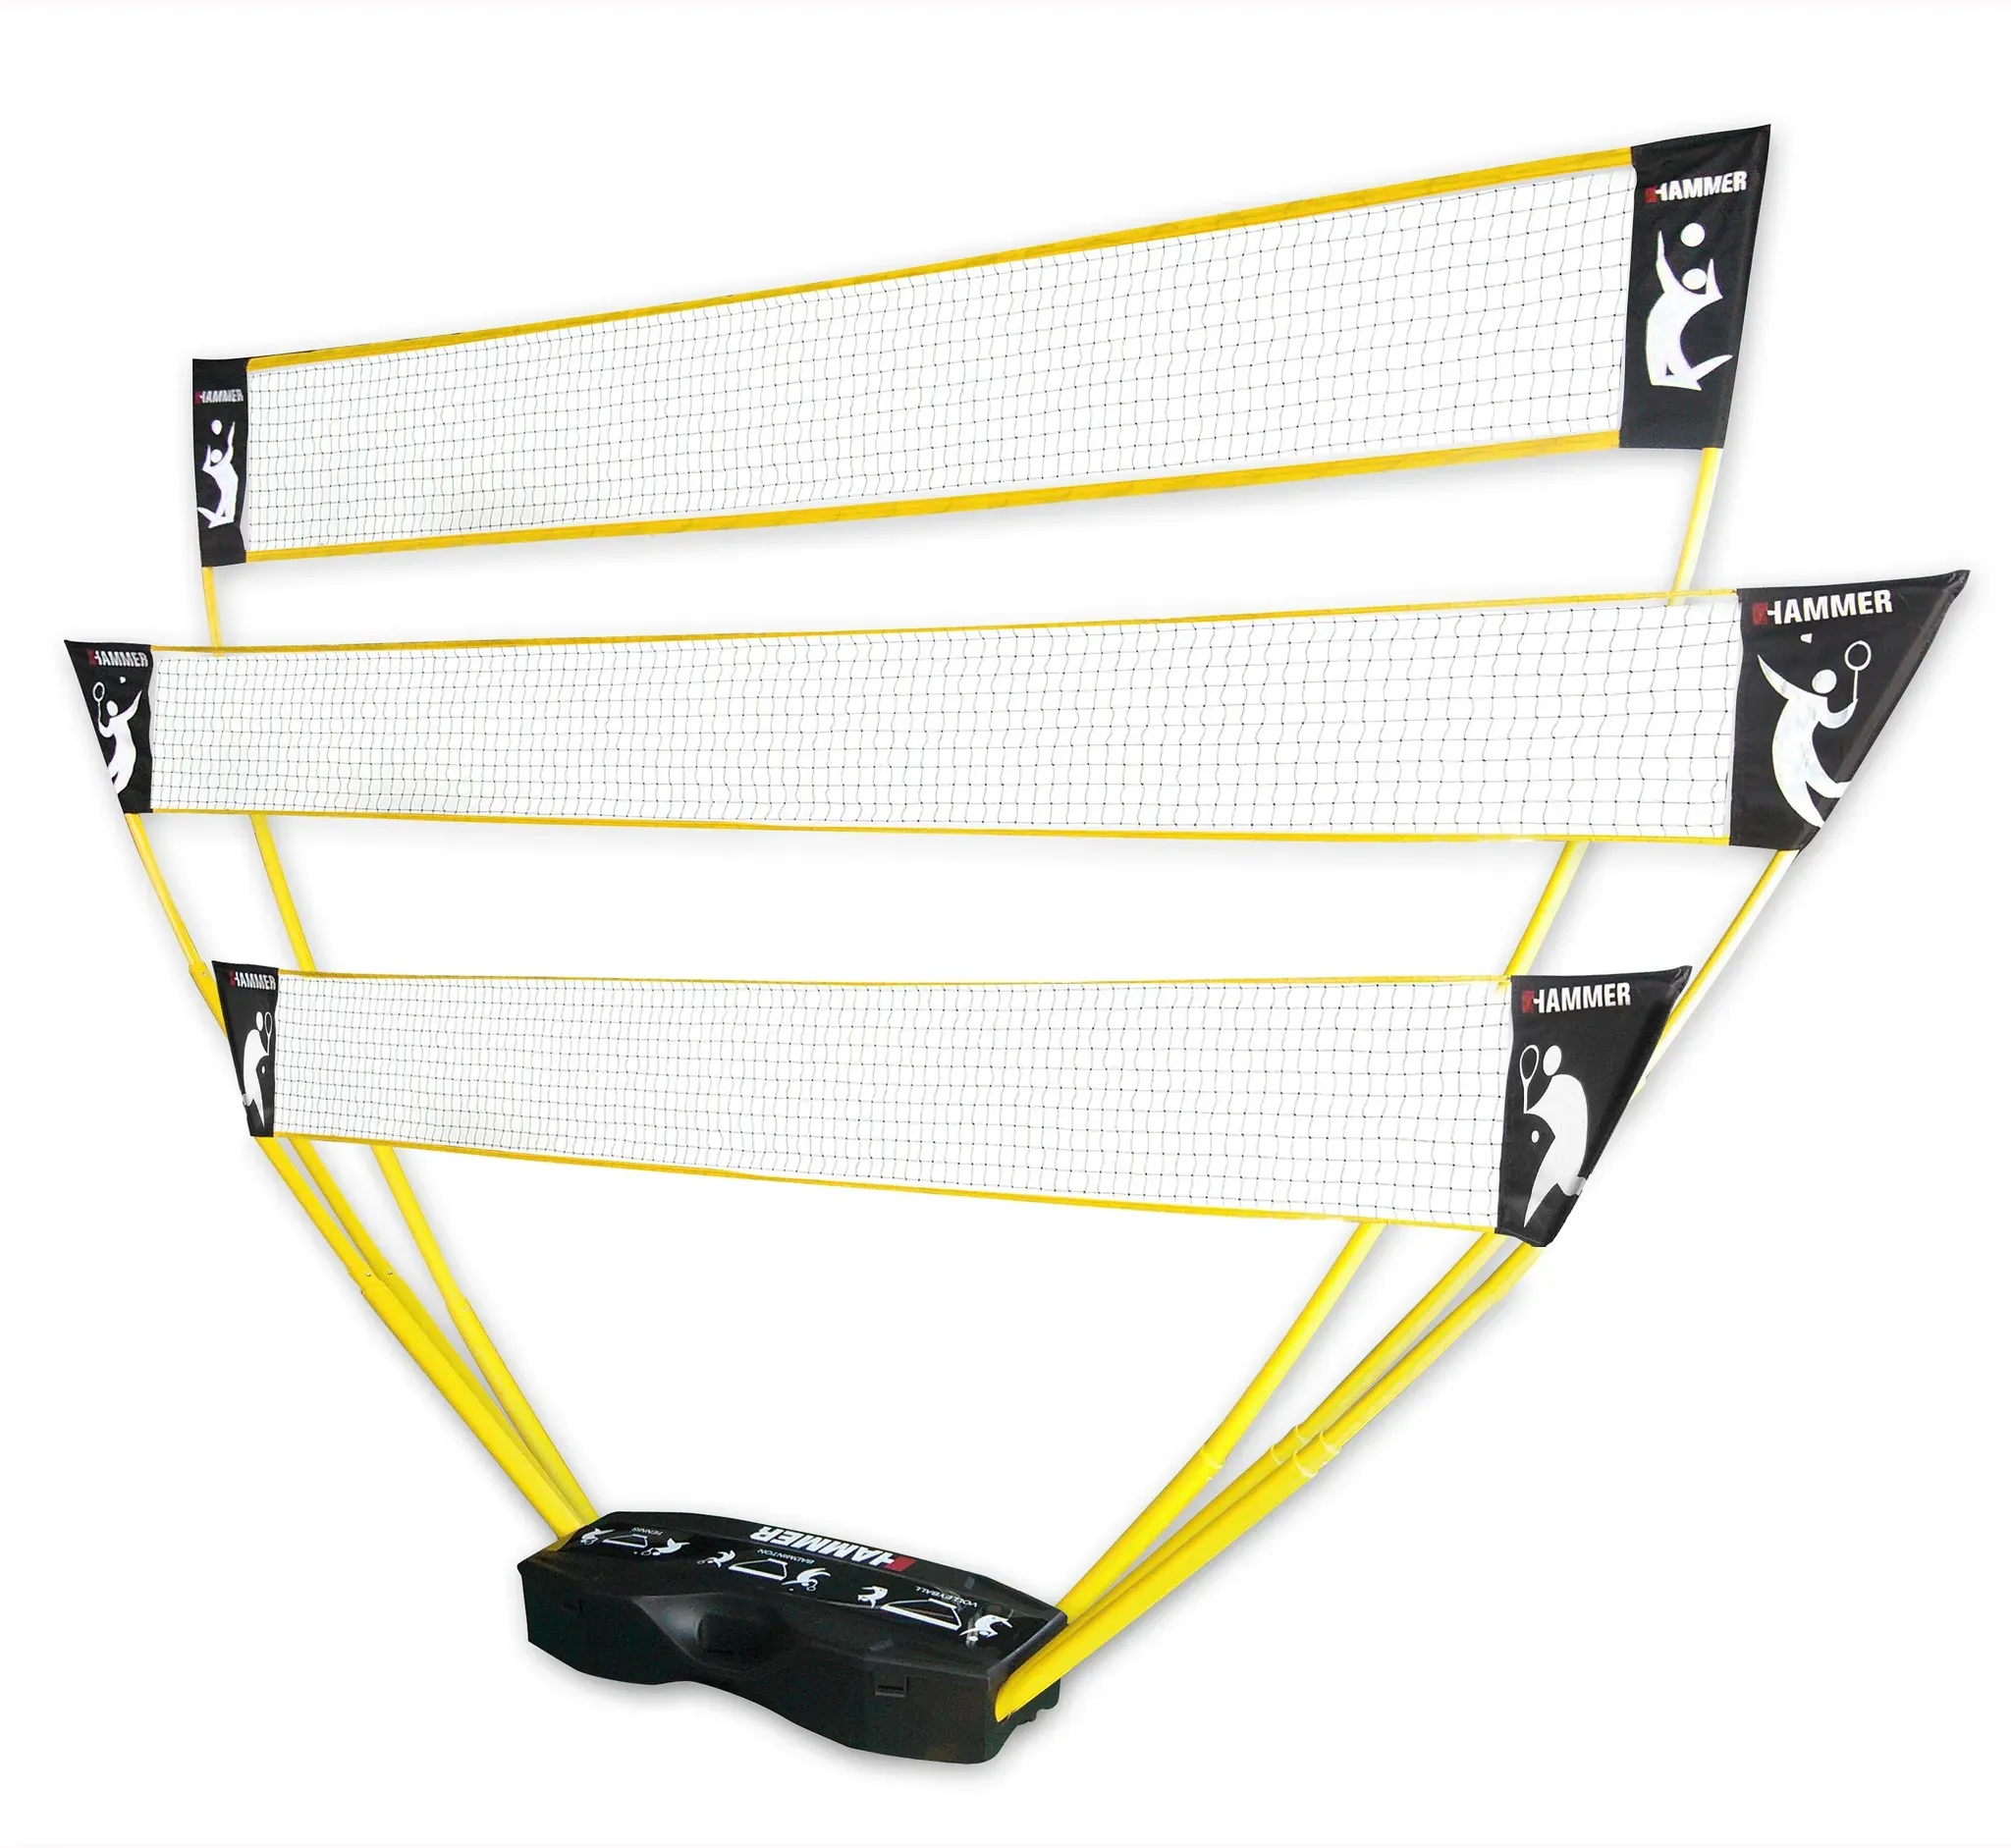 Tennisnetz HAMMER Sport-Netze Gr. Variabel, gelb (gelb, schwarz) Sportnetze 3in1 Netz-Set für Badminton, Tennis und Volleyball